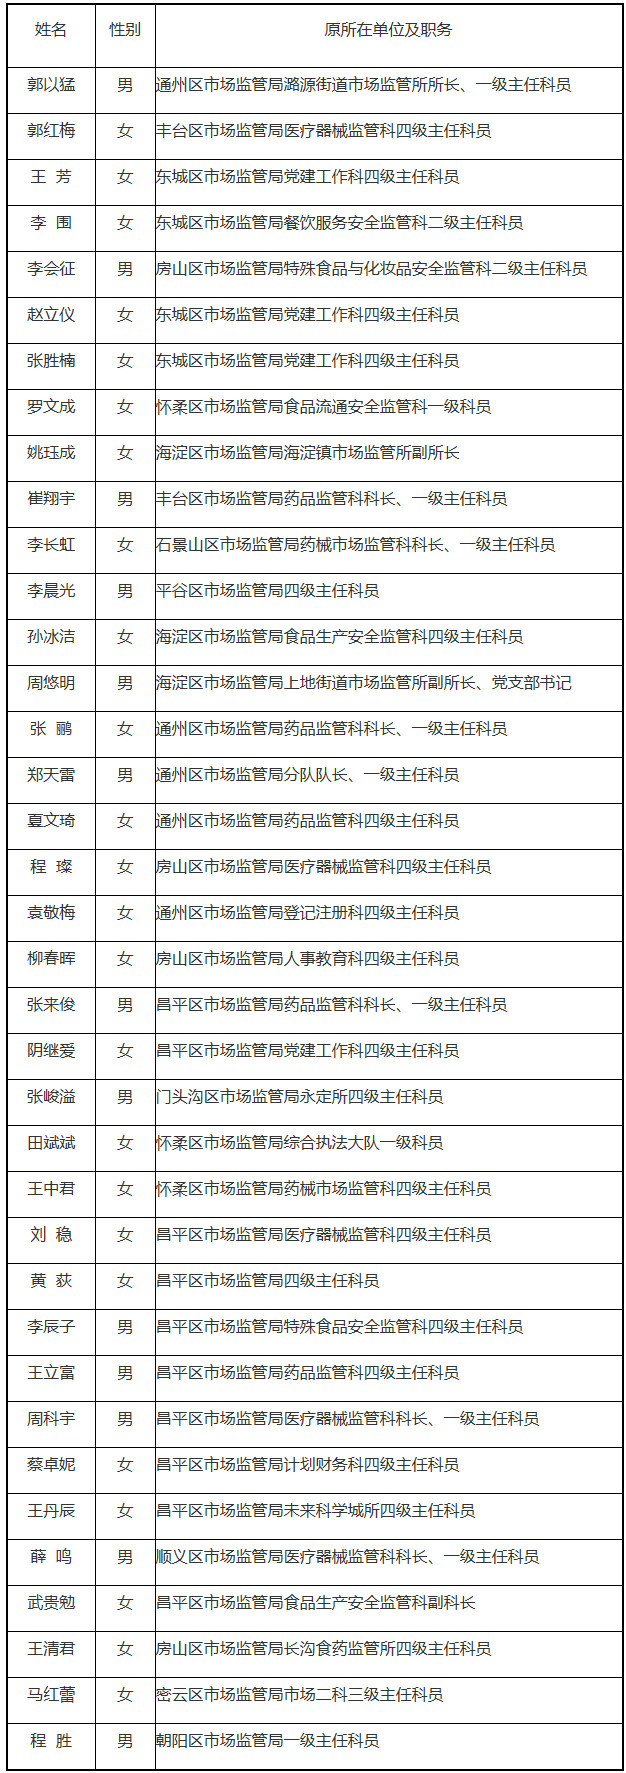 北京市药品监督管理局拟录用名单.jpg